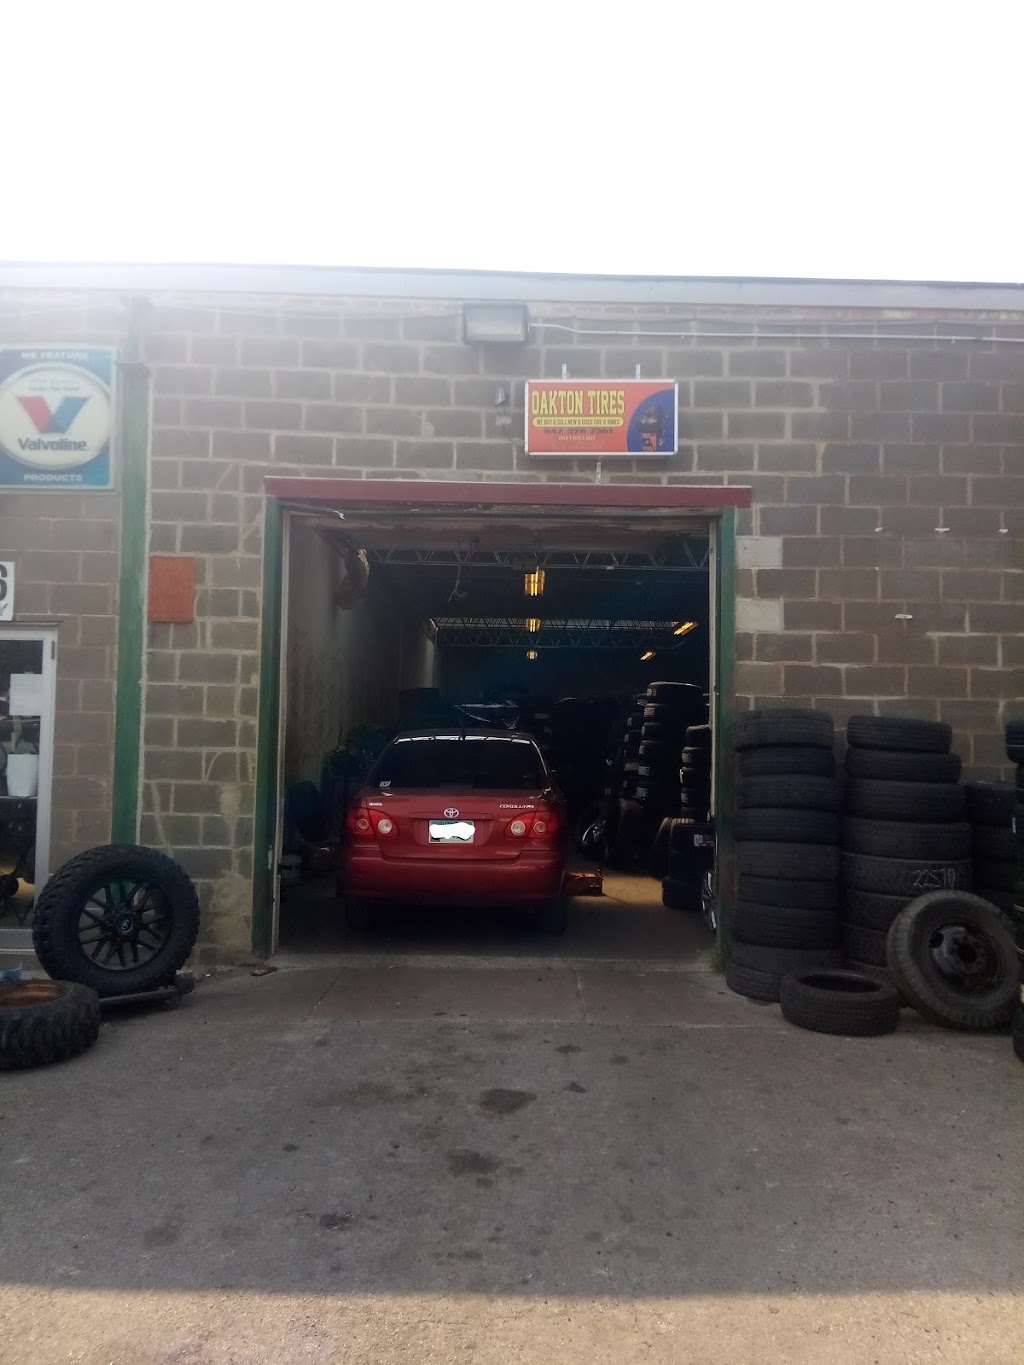 oakton tires shop | 616 Hartrey Ave, Evanston, IL 60202 | Phone: (847) 328-7351